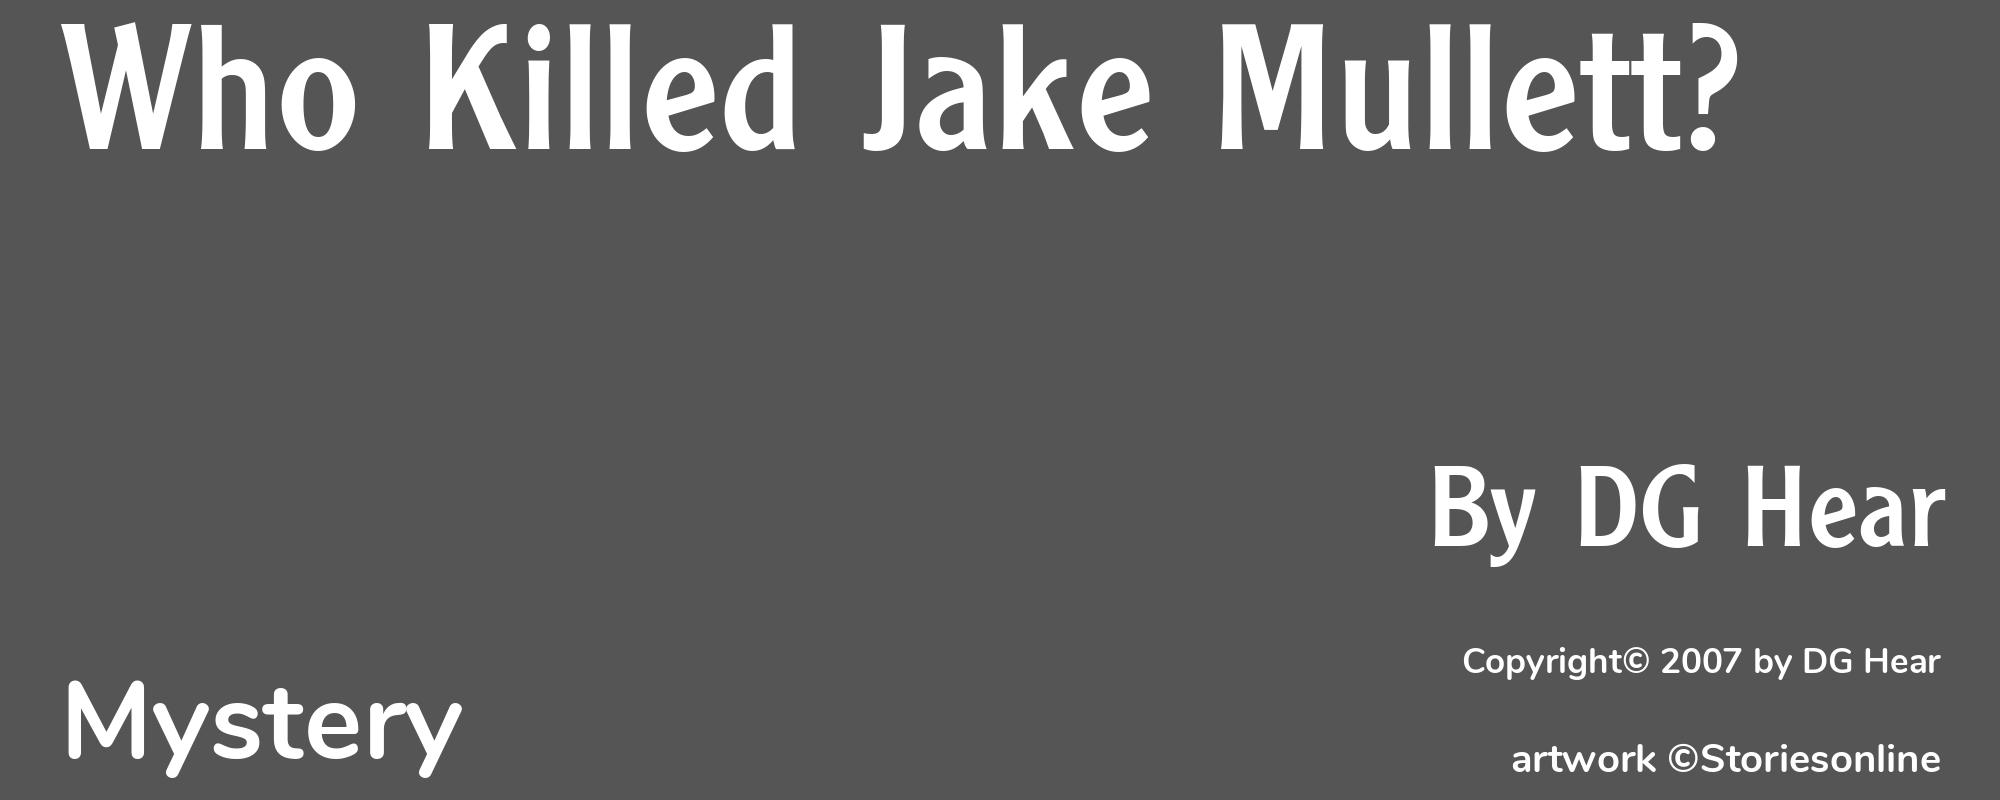 Who Killed Jake Mullett? - Cover